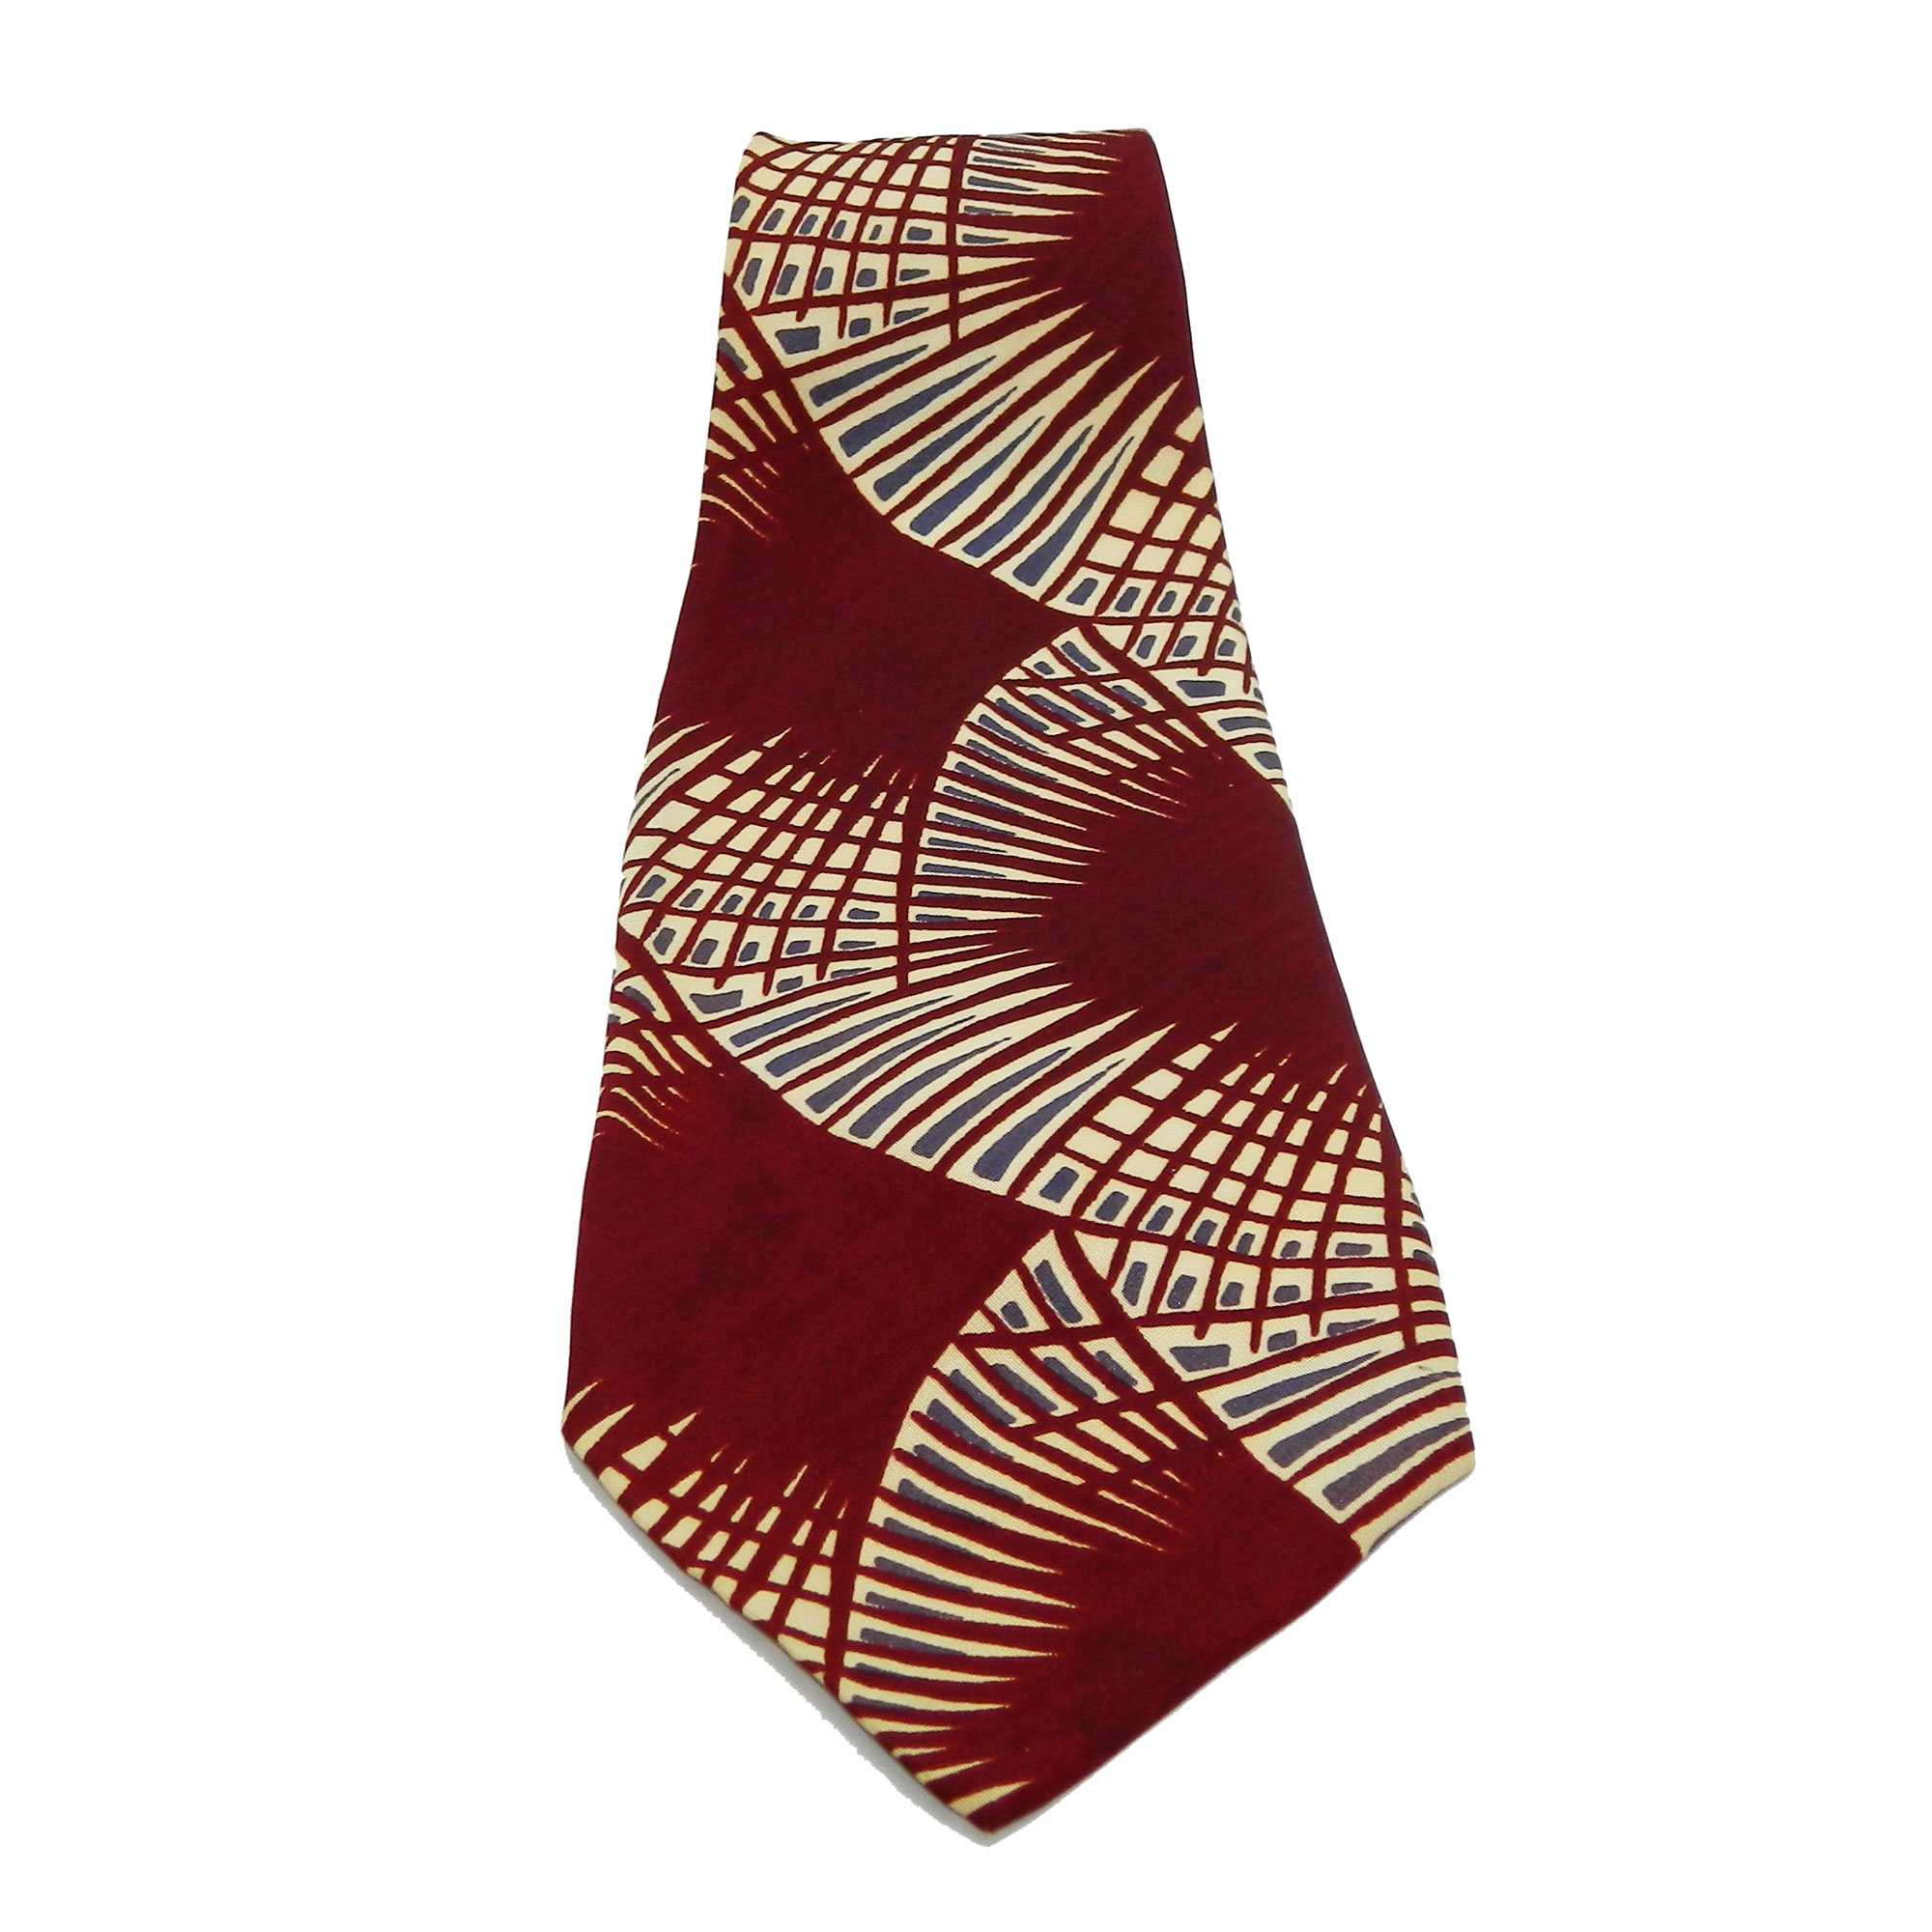 1940s Art Deco tie